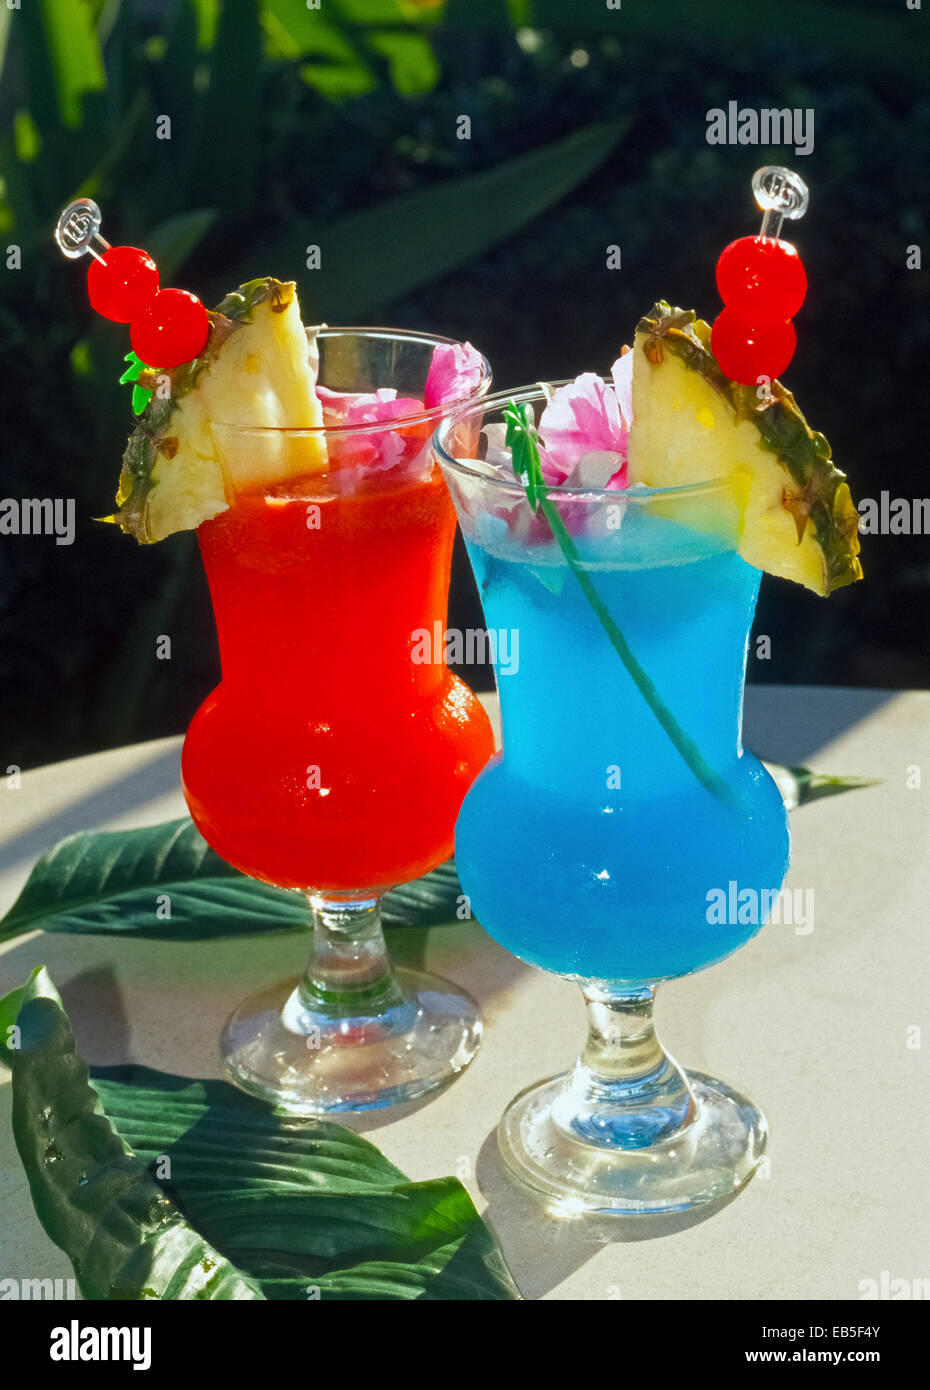 Las rodajas de piña, cerezas al marrasquino y pétalos de flores decoran coloridos y refrescantes bebidas tropicales que son muy populares en las Islas de Hawaii, EE.UU.. Foto de stock